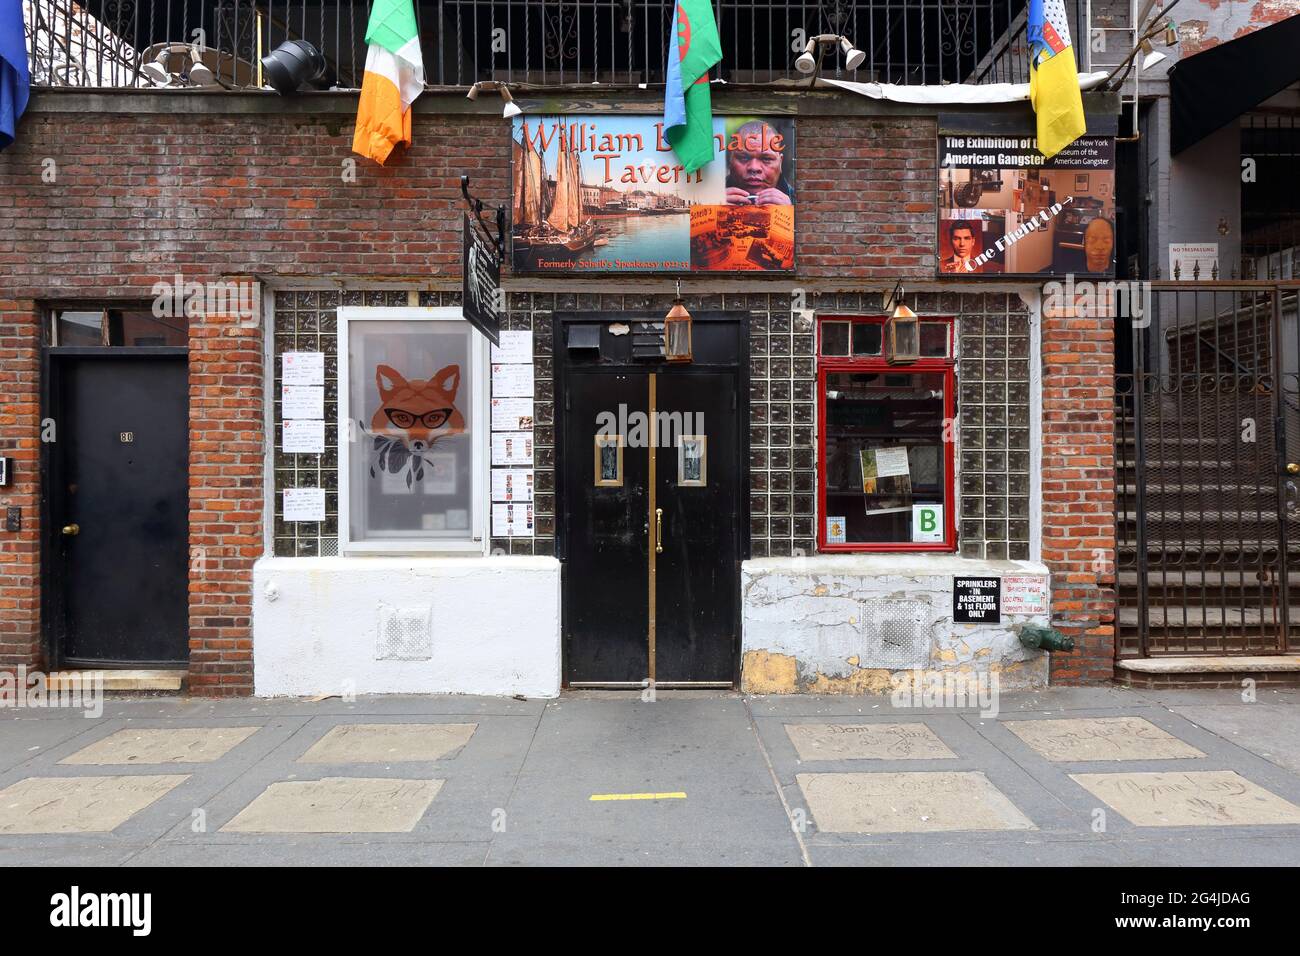 William Barnacle Tavern, 80 St Marks Place, New York, NYC Foto von einer Bar im East Village-Viertel von Manhattan. Stockfoto